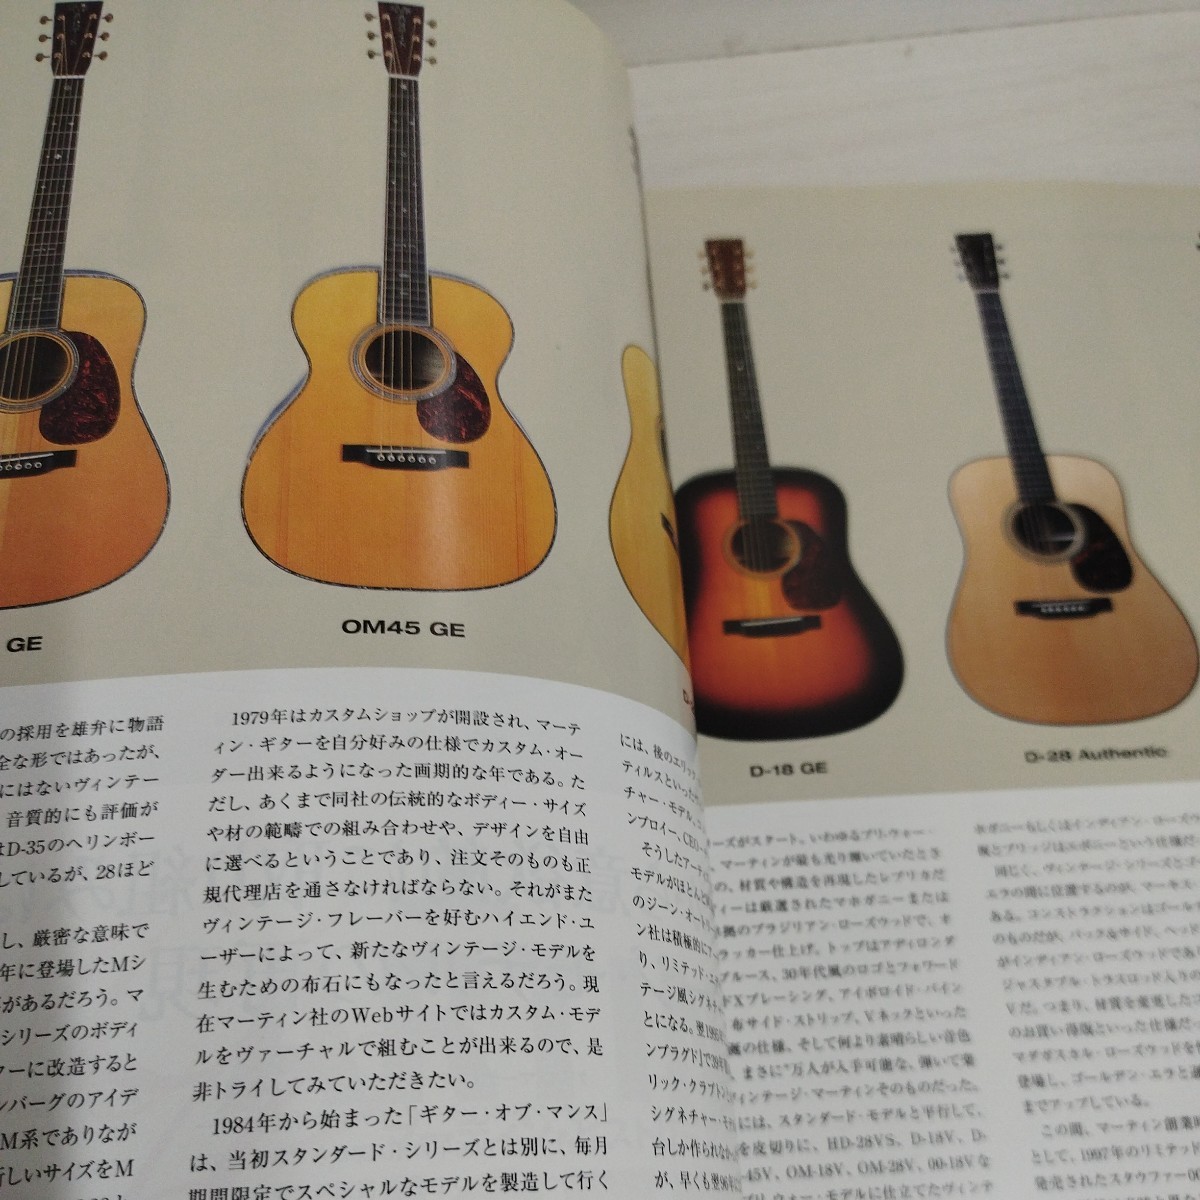 アコースティック・ギター・ブック27 DVD欠品 新たな歴史と伝統を刻みつつあるマーチン社_画像7